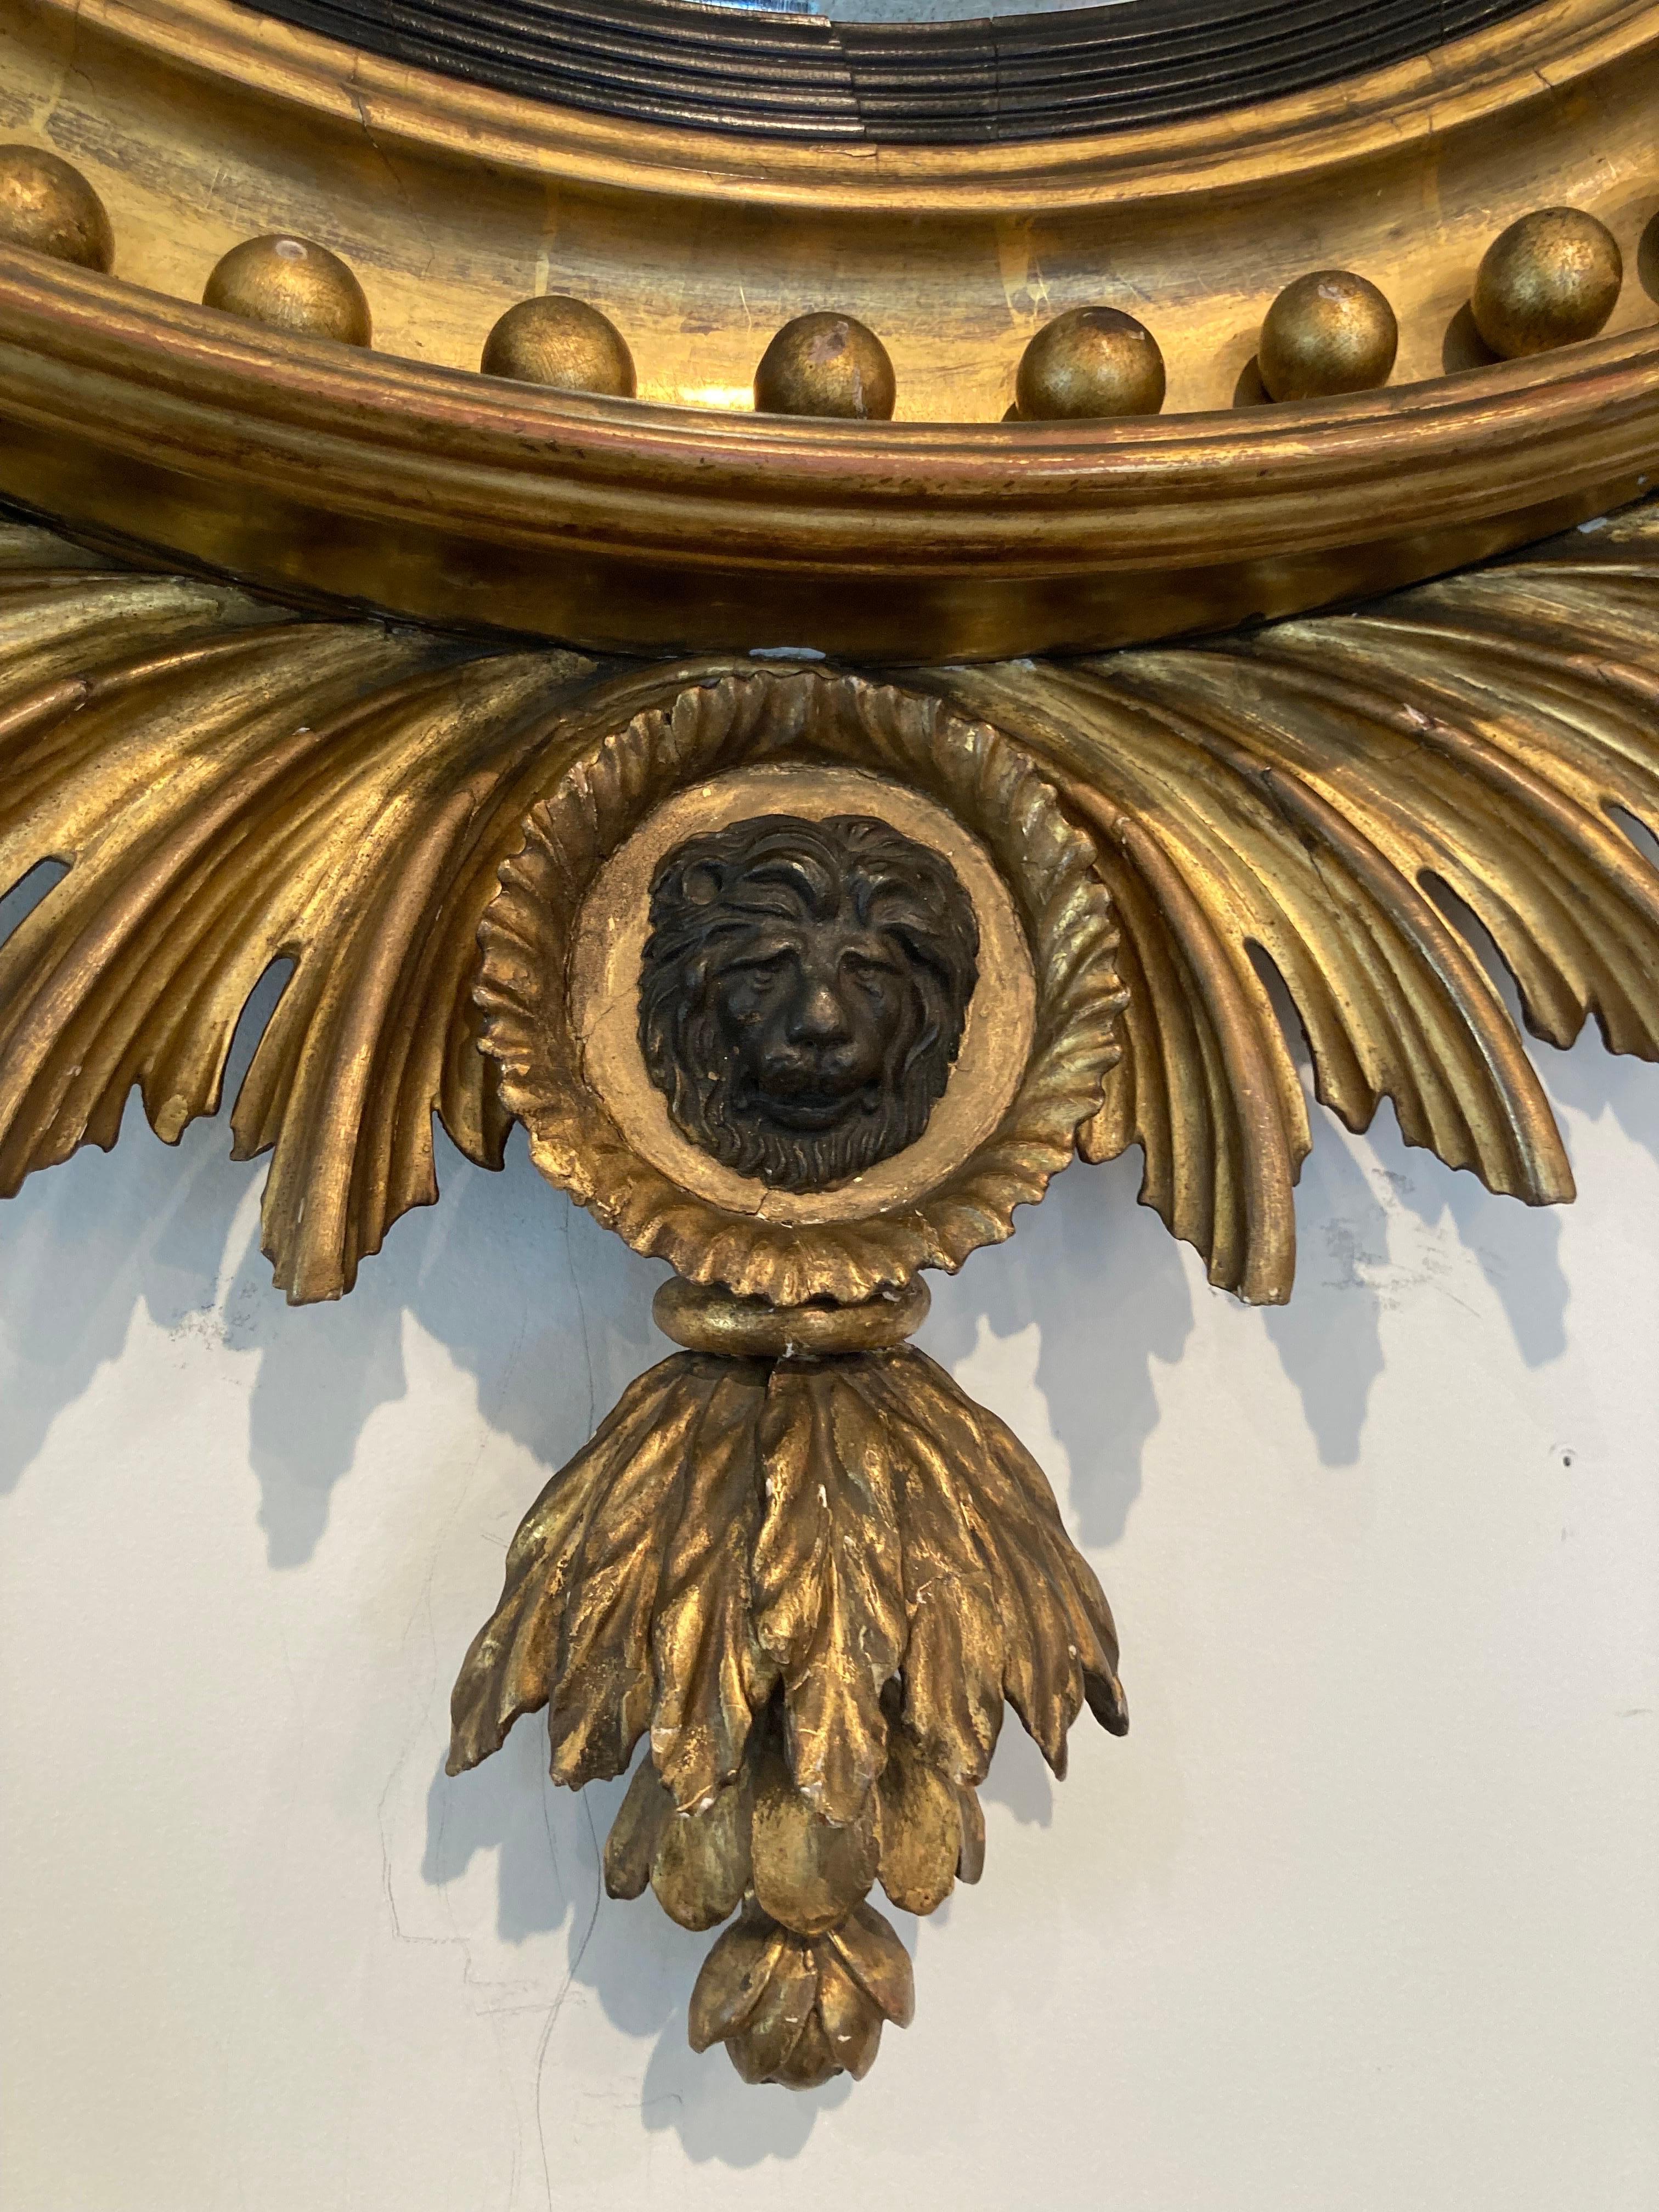 Elégant miroir convexe du 19ème siècle dans un cadre en bois doré avec une coiffe d'aigle noire. 4 bras de bougie en métal doré et un médaillon à face de lion noir. Style fédéral.